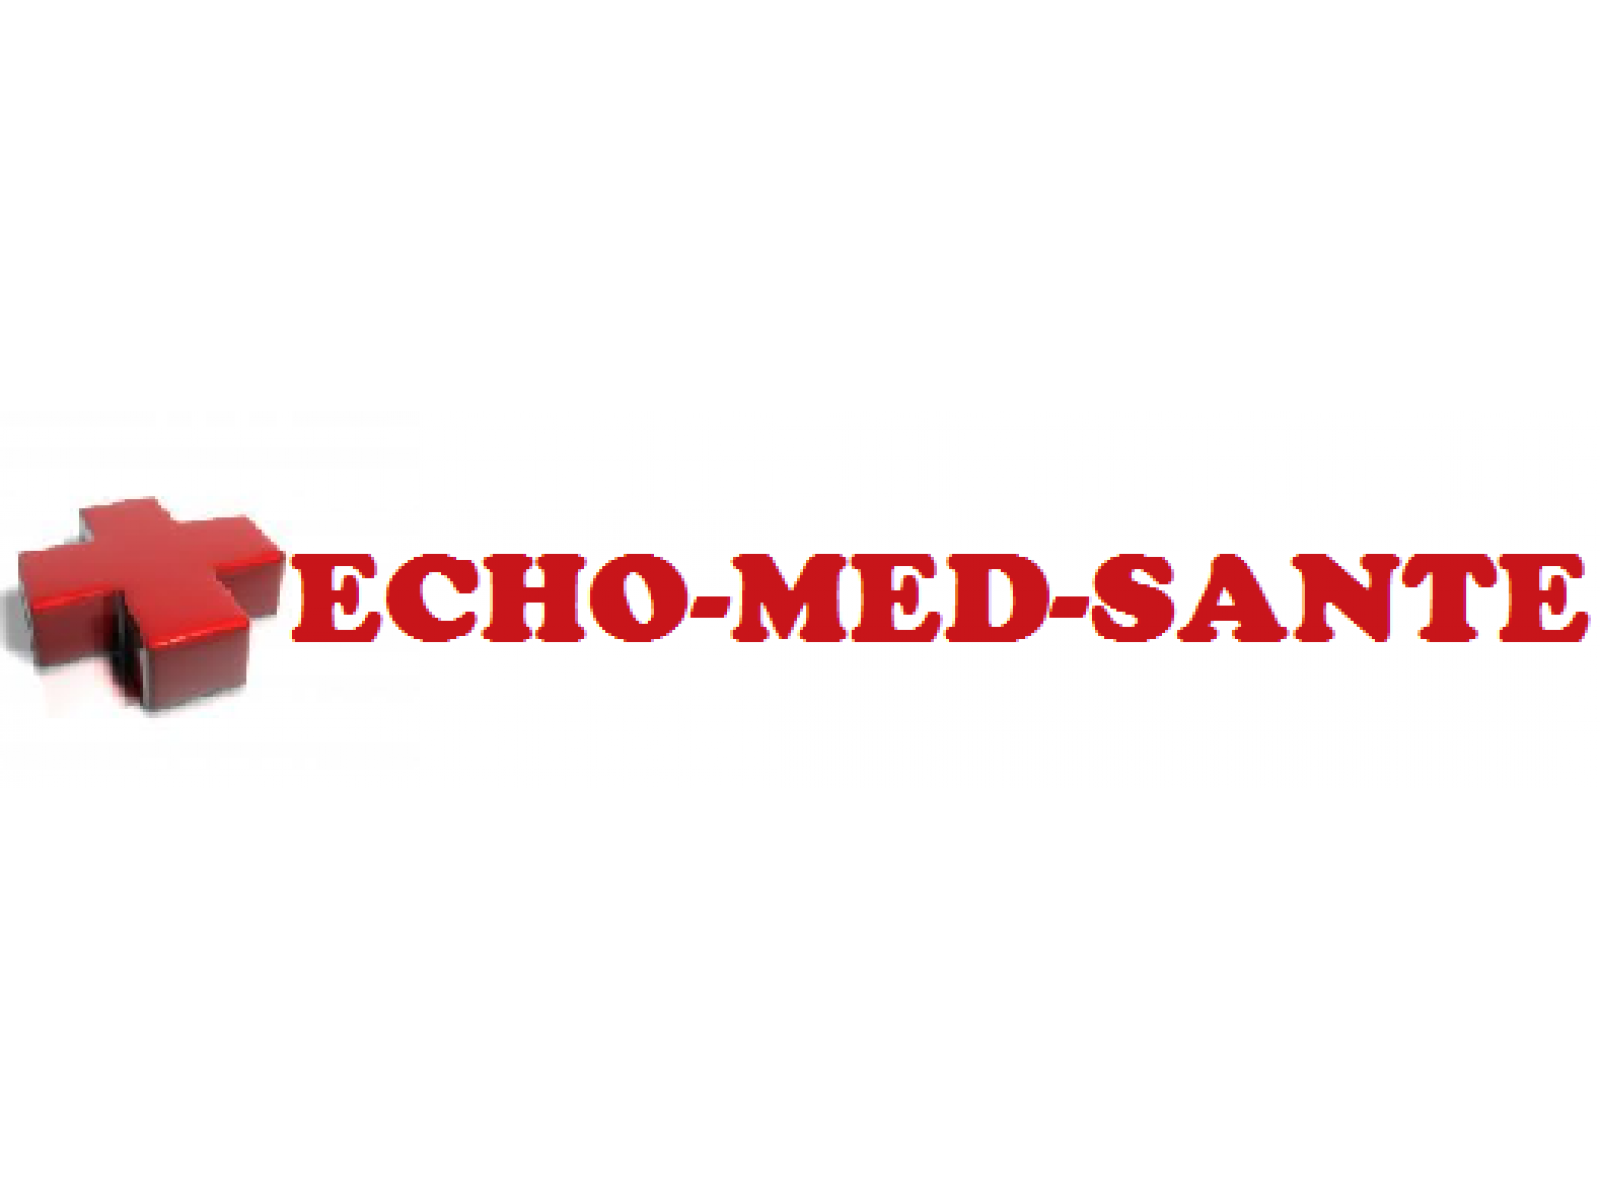 Echo-Med-Sante - EMS1.png